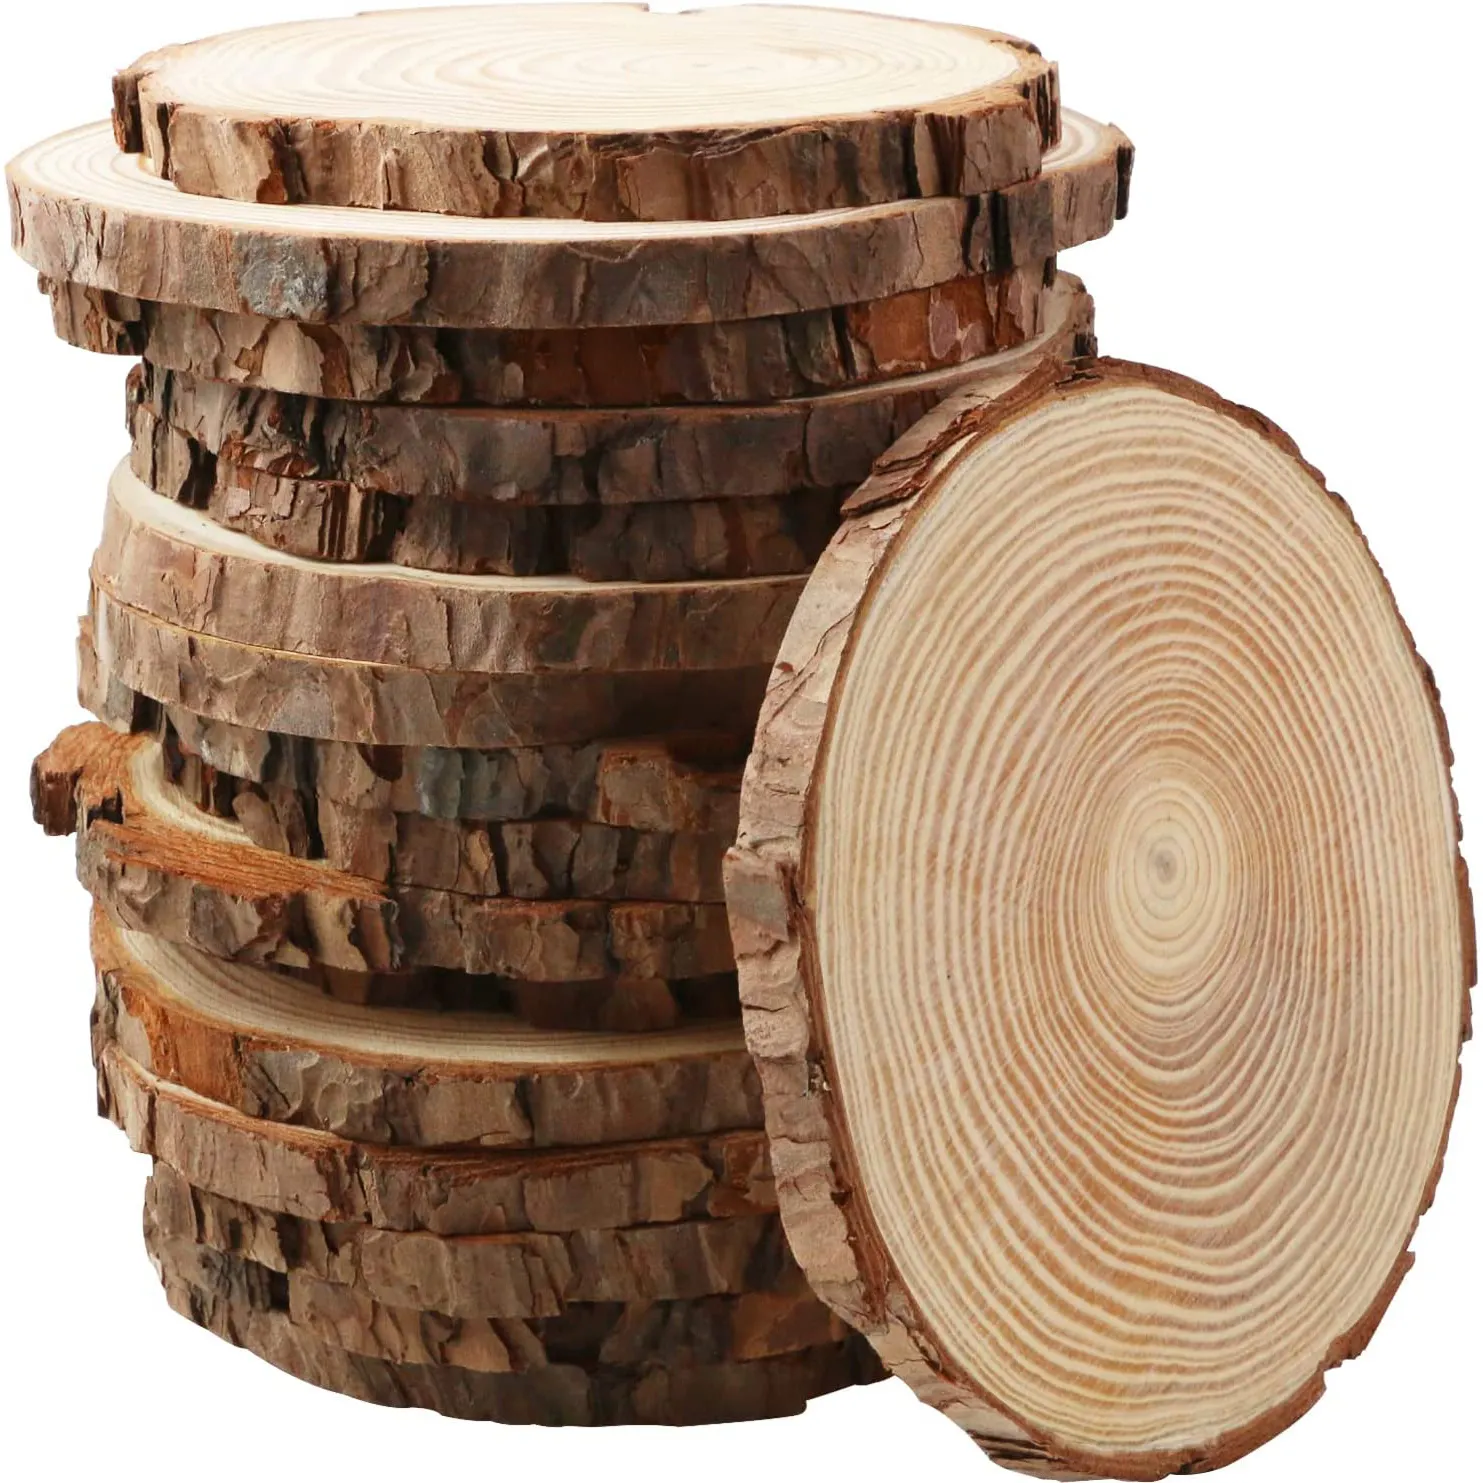 Plateau en bois non fini avec écorce de copeaux de bois pièce maîtresse tranche de bois ovale